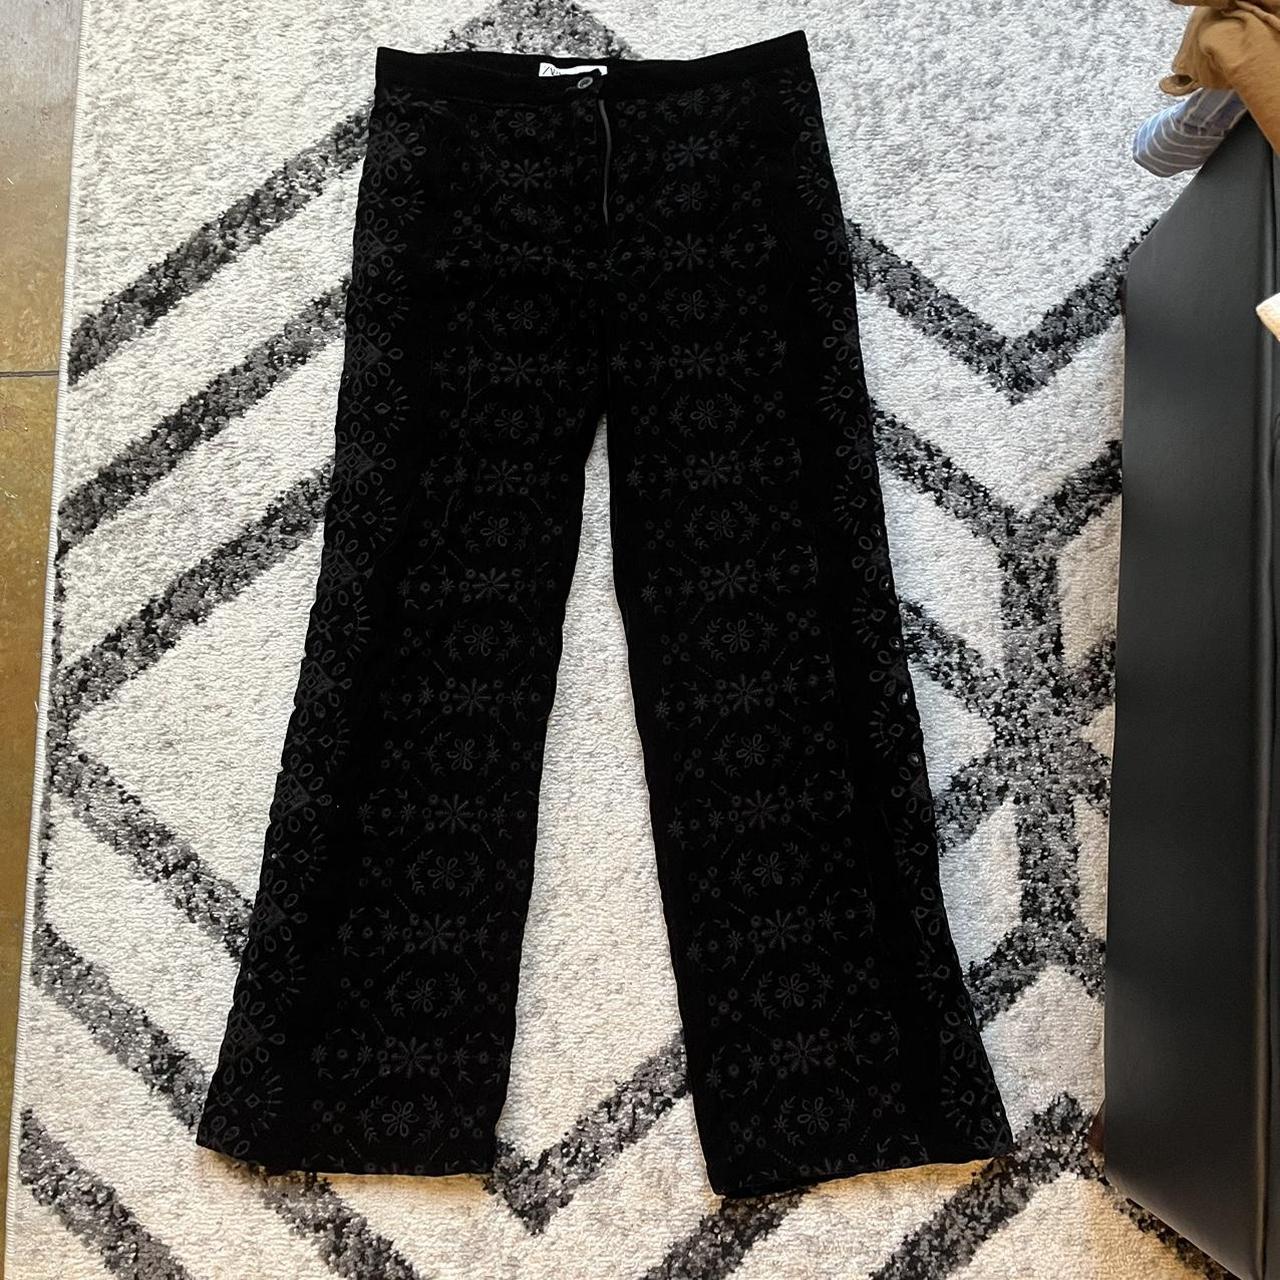 ZARA's Wideleg Velvet Tie Dye Pants in small size - Depop